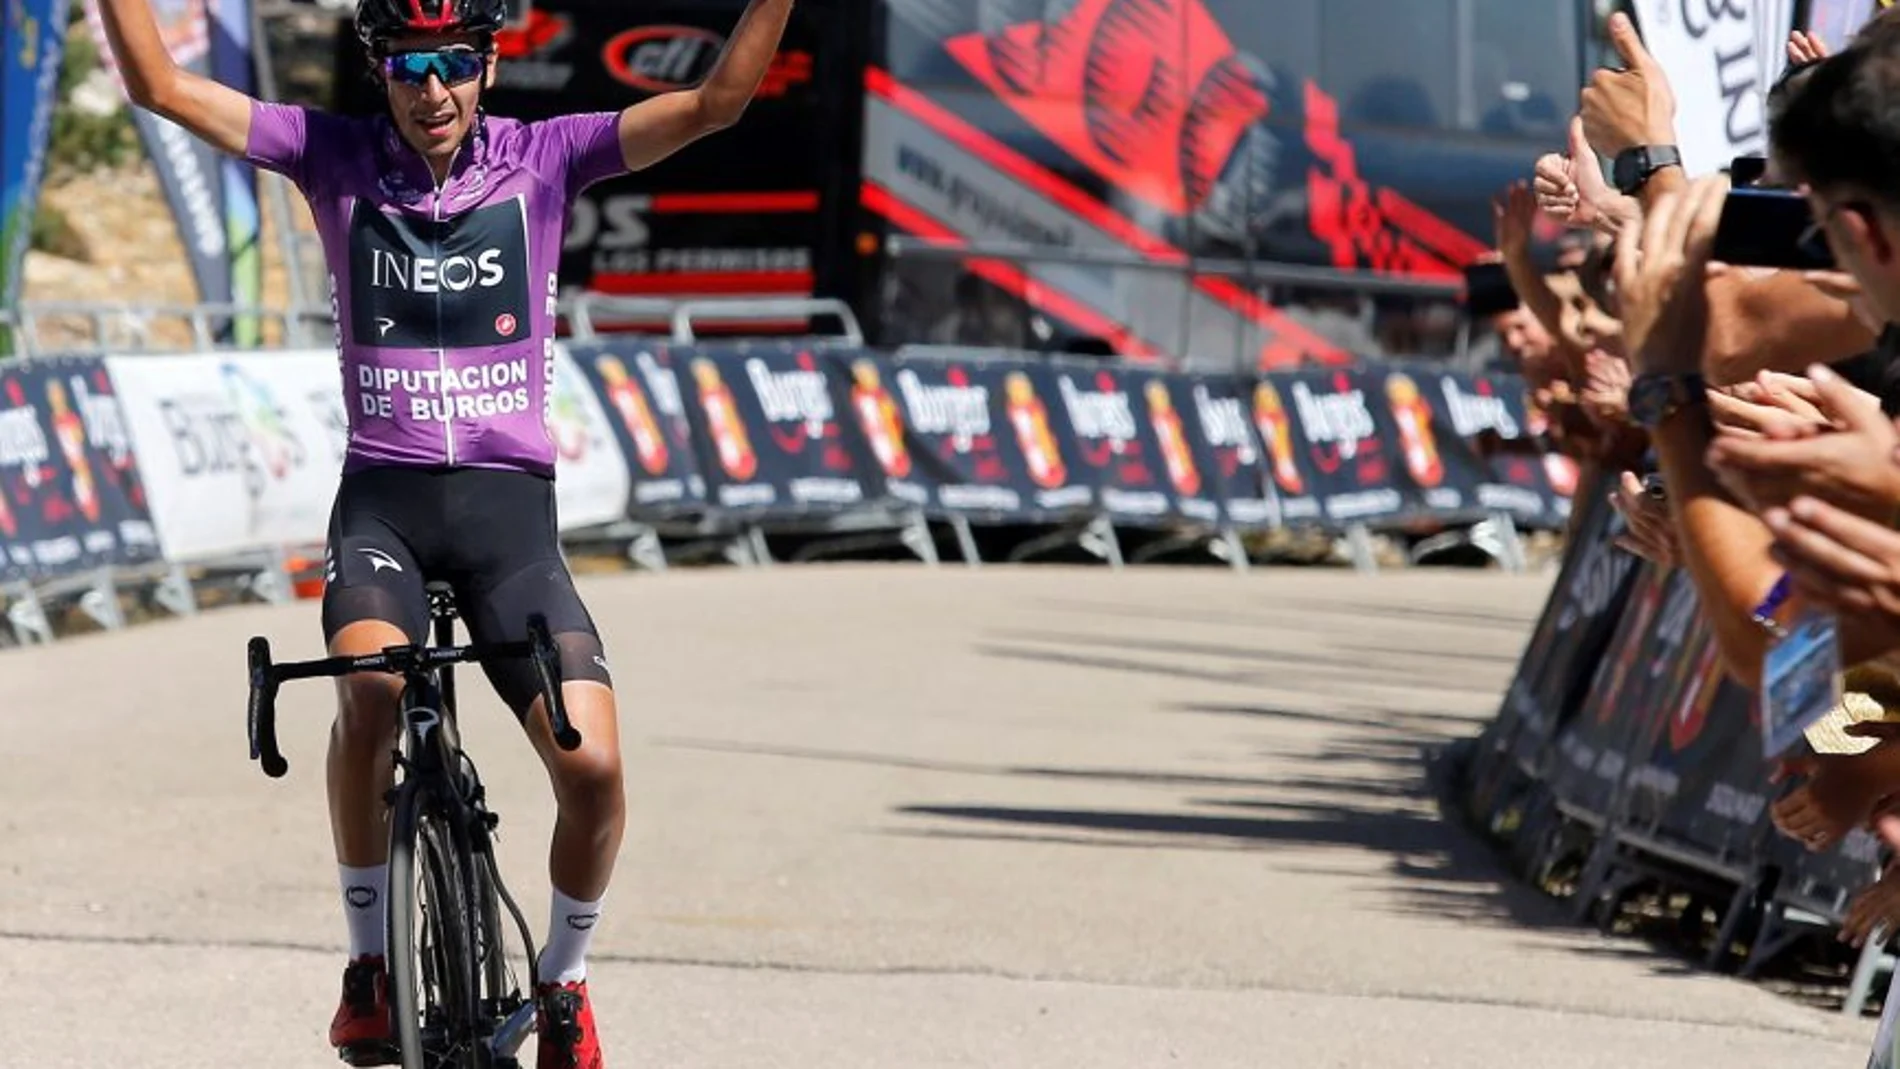 El ciclista Iván Ramiro Sosa, del equipo Ineos, gana la quinta y última etapa, de 146 km, entre Santo Domingo de Silos y las lagunas de Neila, y además se proclama ganador de la Vuelta a Burgos de 2019